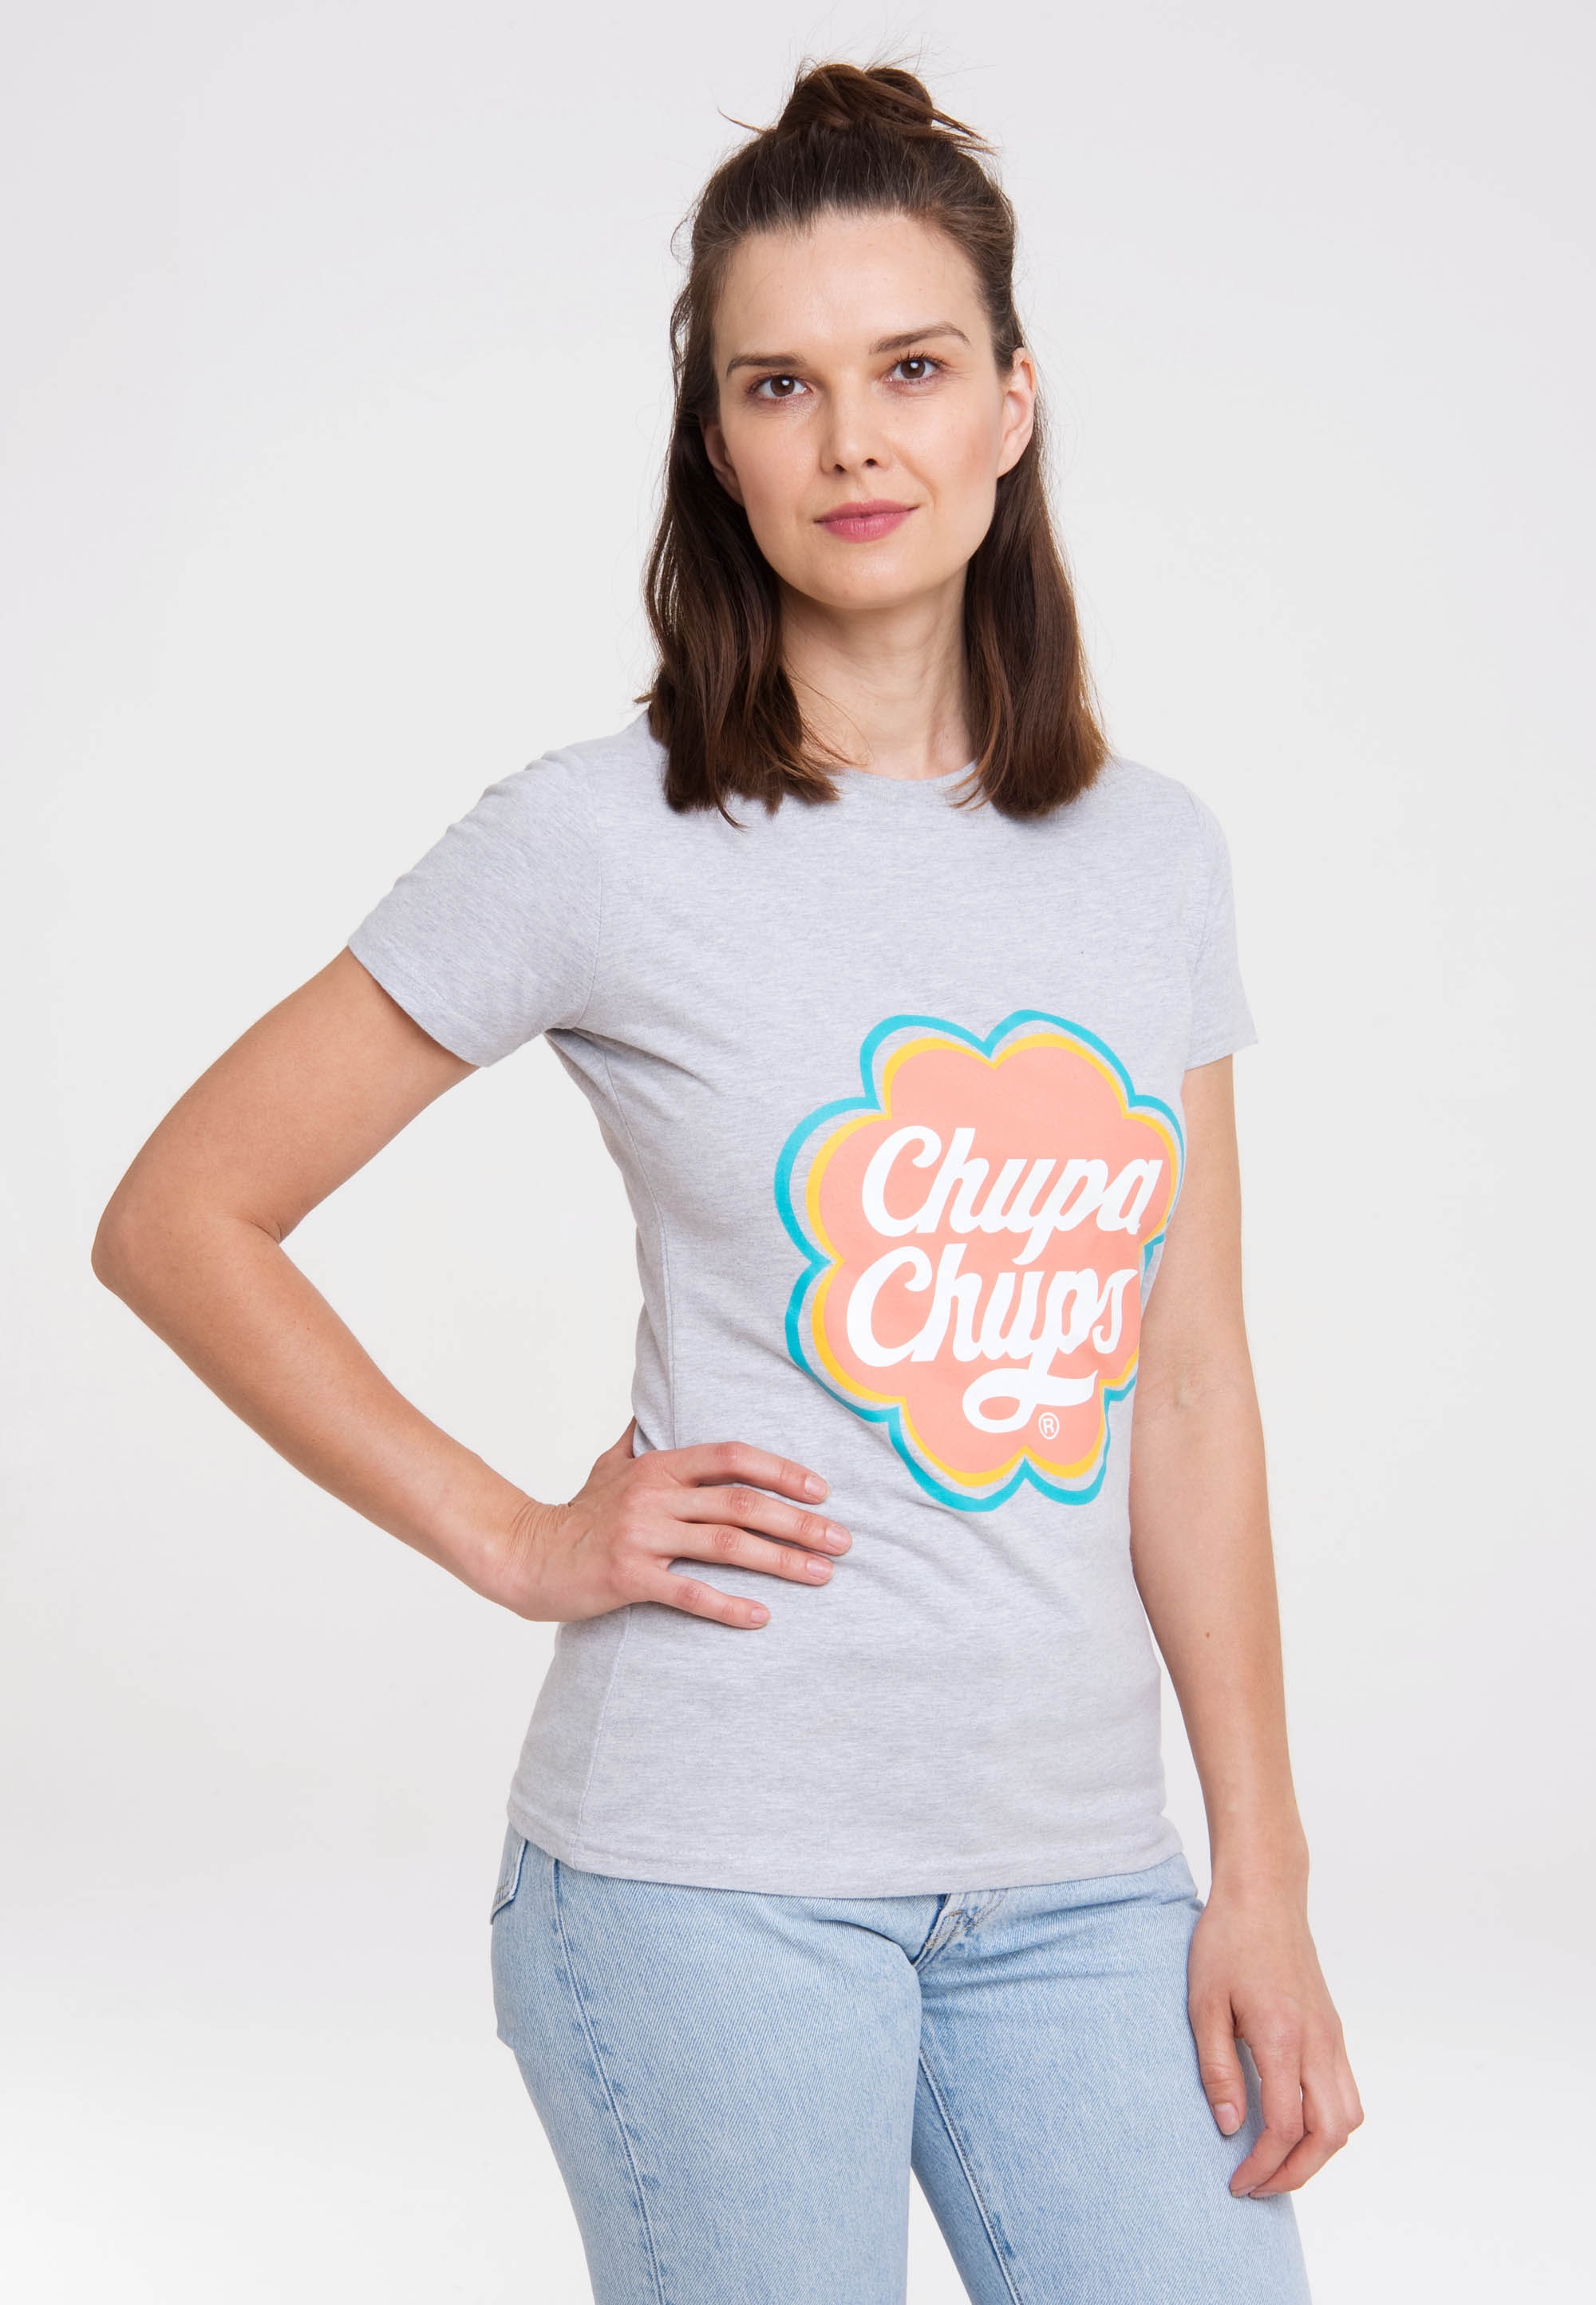 LOGOSHIRT T-Shirt »Chupa Chups«, mit lizenzierten Design kaufen